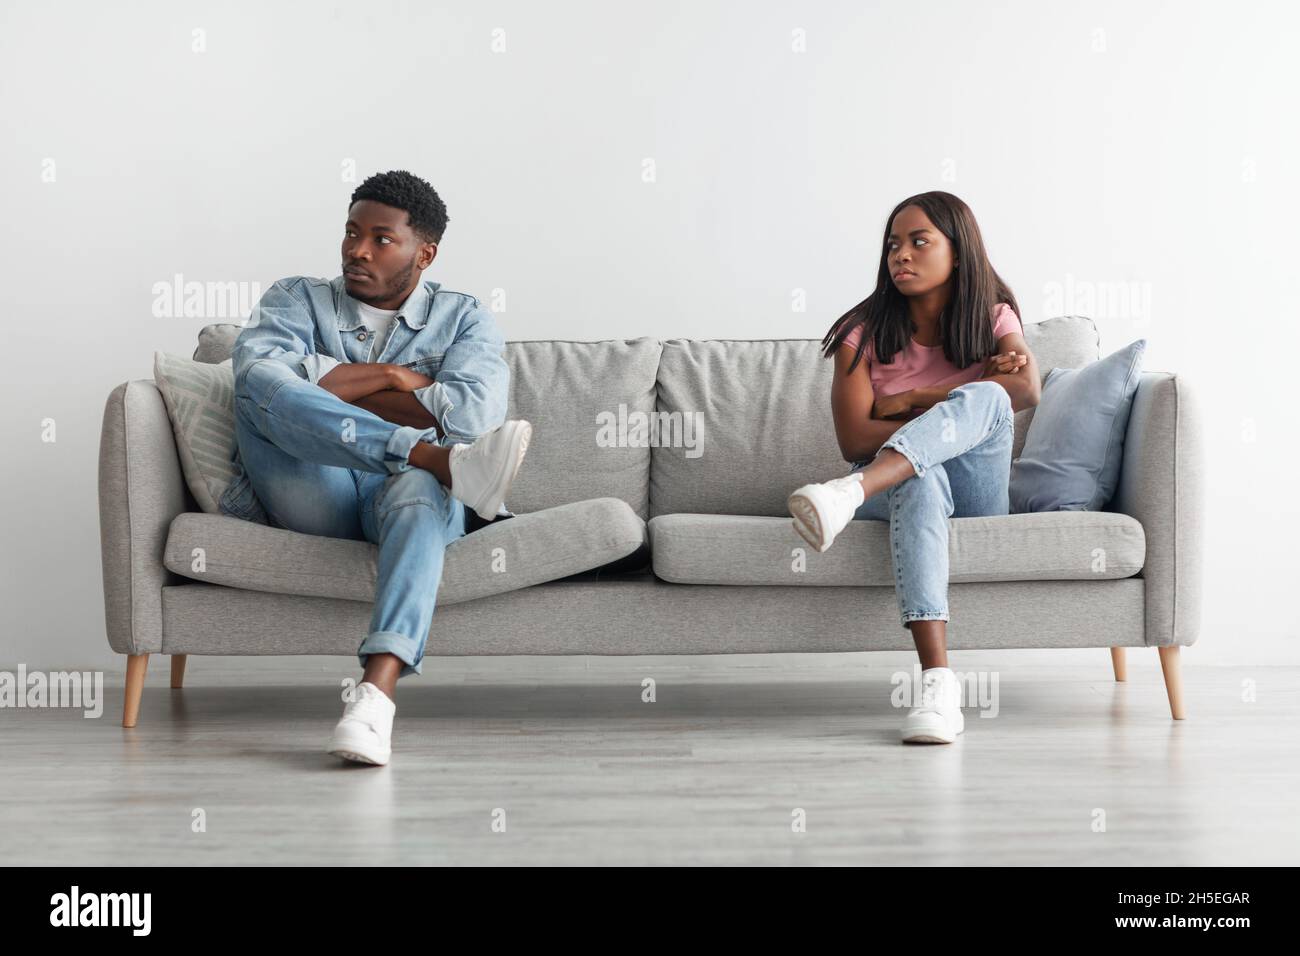 Les jeunes couples noirs se battent, se ignorant les uns les autres Banque D'Images